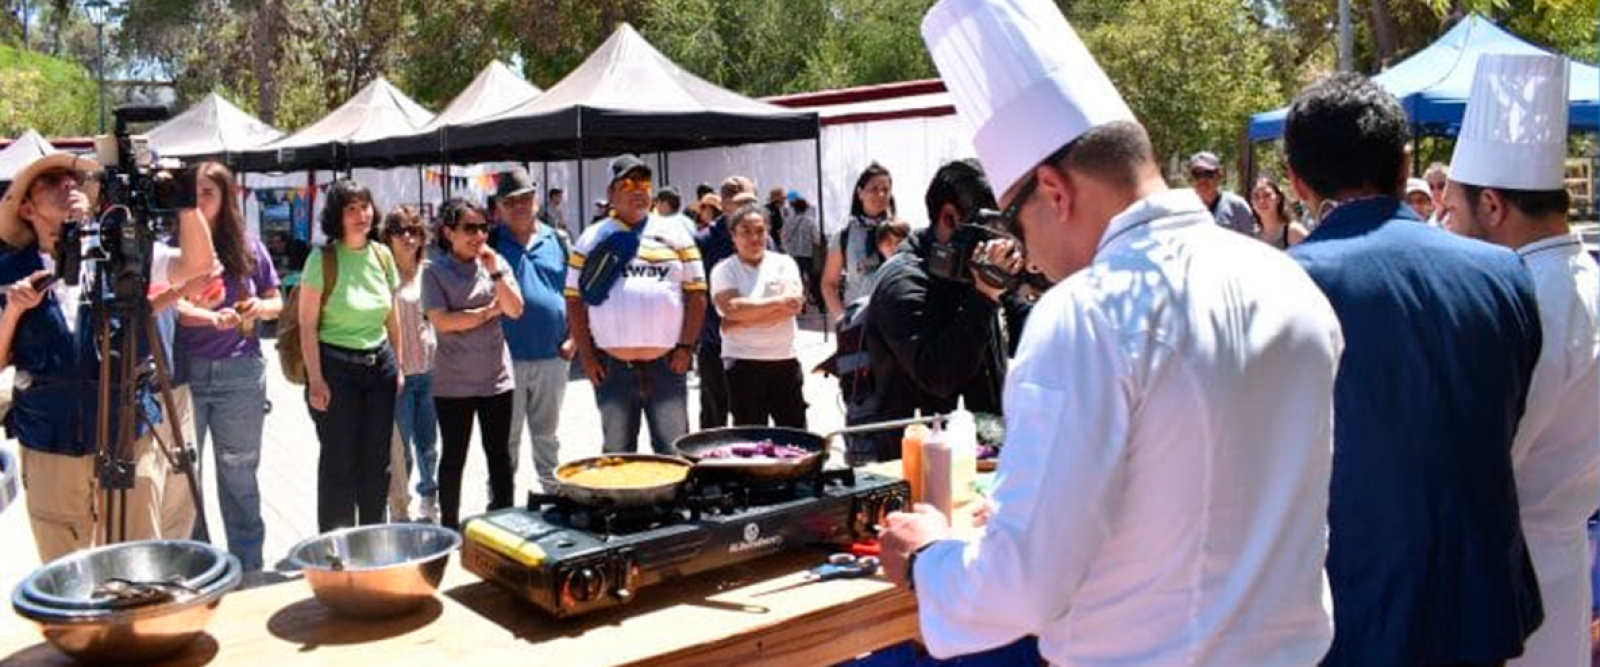 Vicuña albergará encuentro gastronómico gratuito: Participarán más de 20 restaurantes